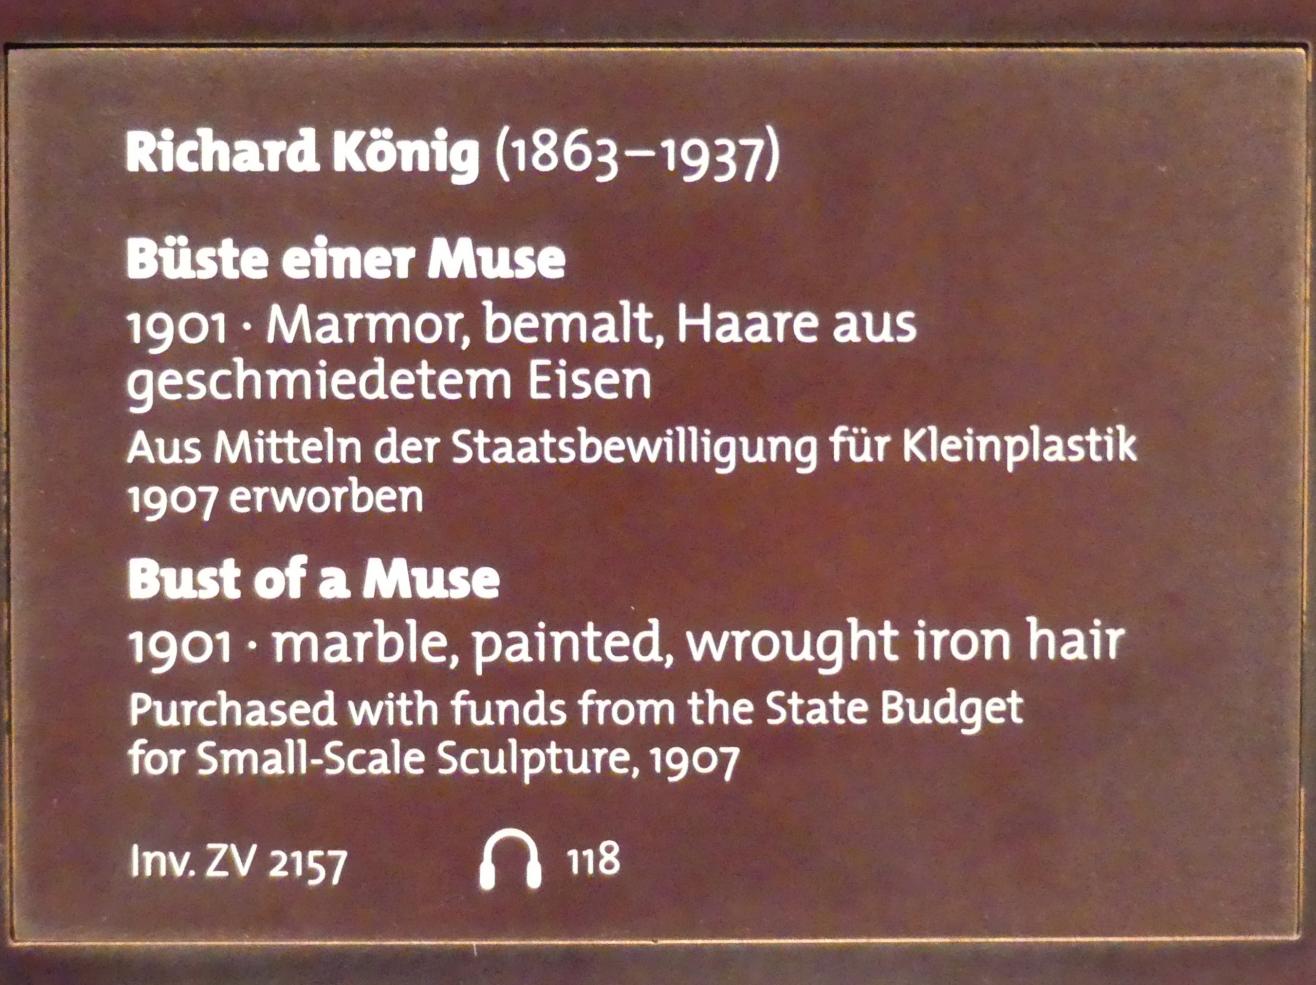 Richard König (1901), Büste einer Muse, Dresden, Albertinum, Galerie Neue Meister, 1. Obergeschoss, Klingersaal, 1901, Bild 3/3